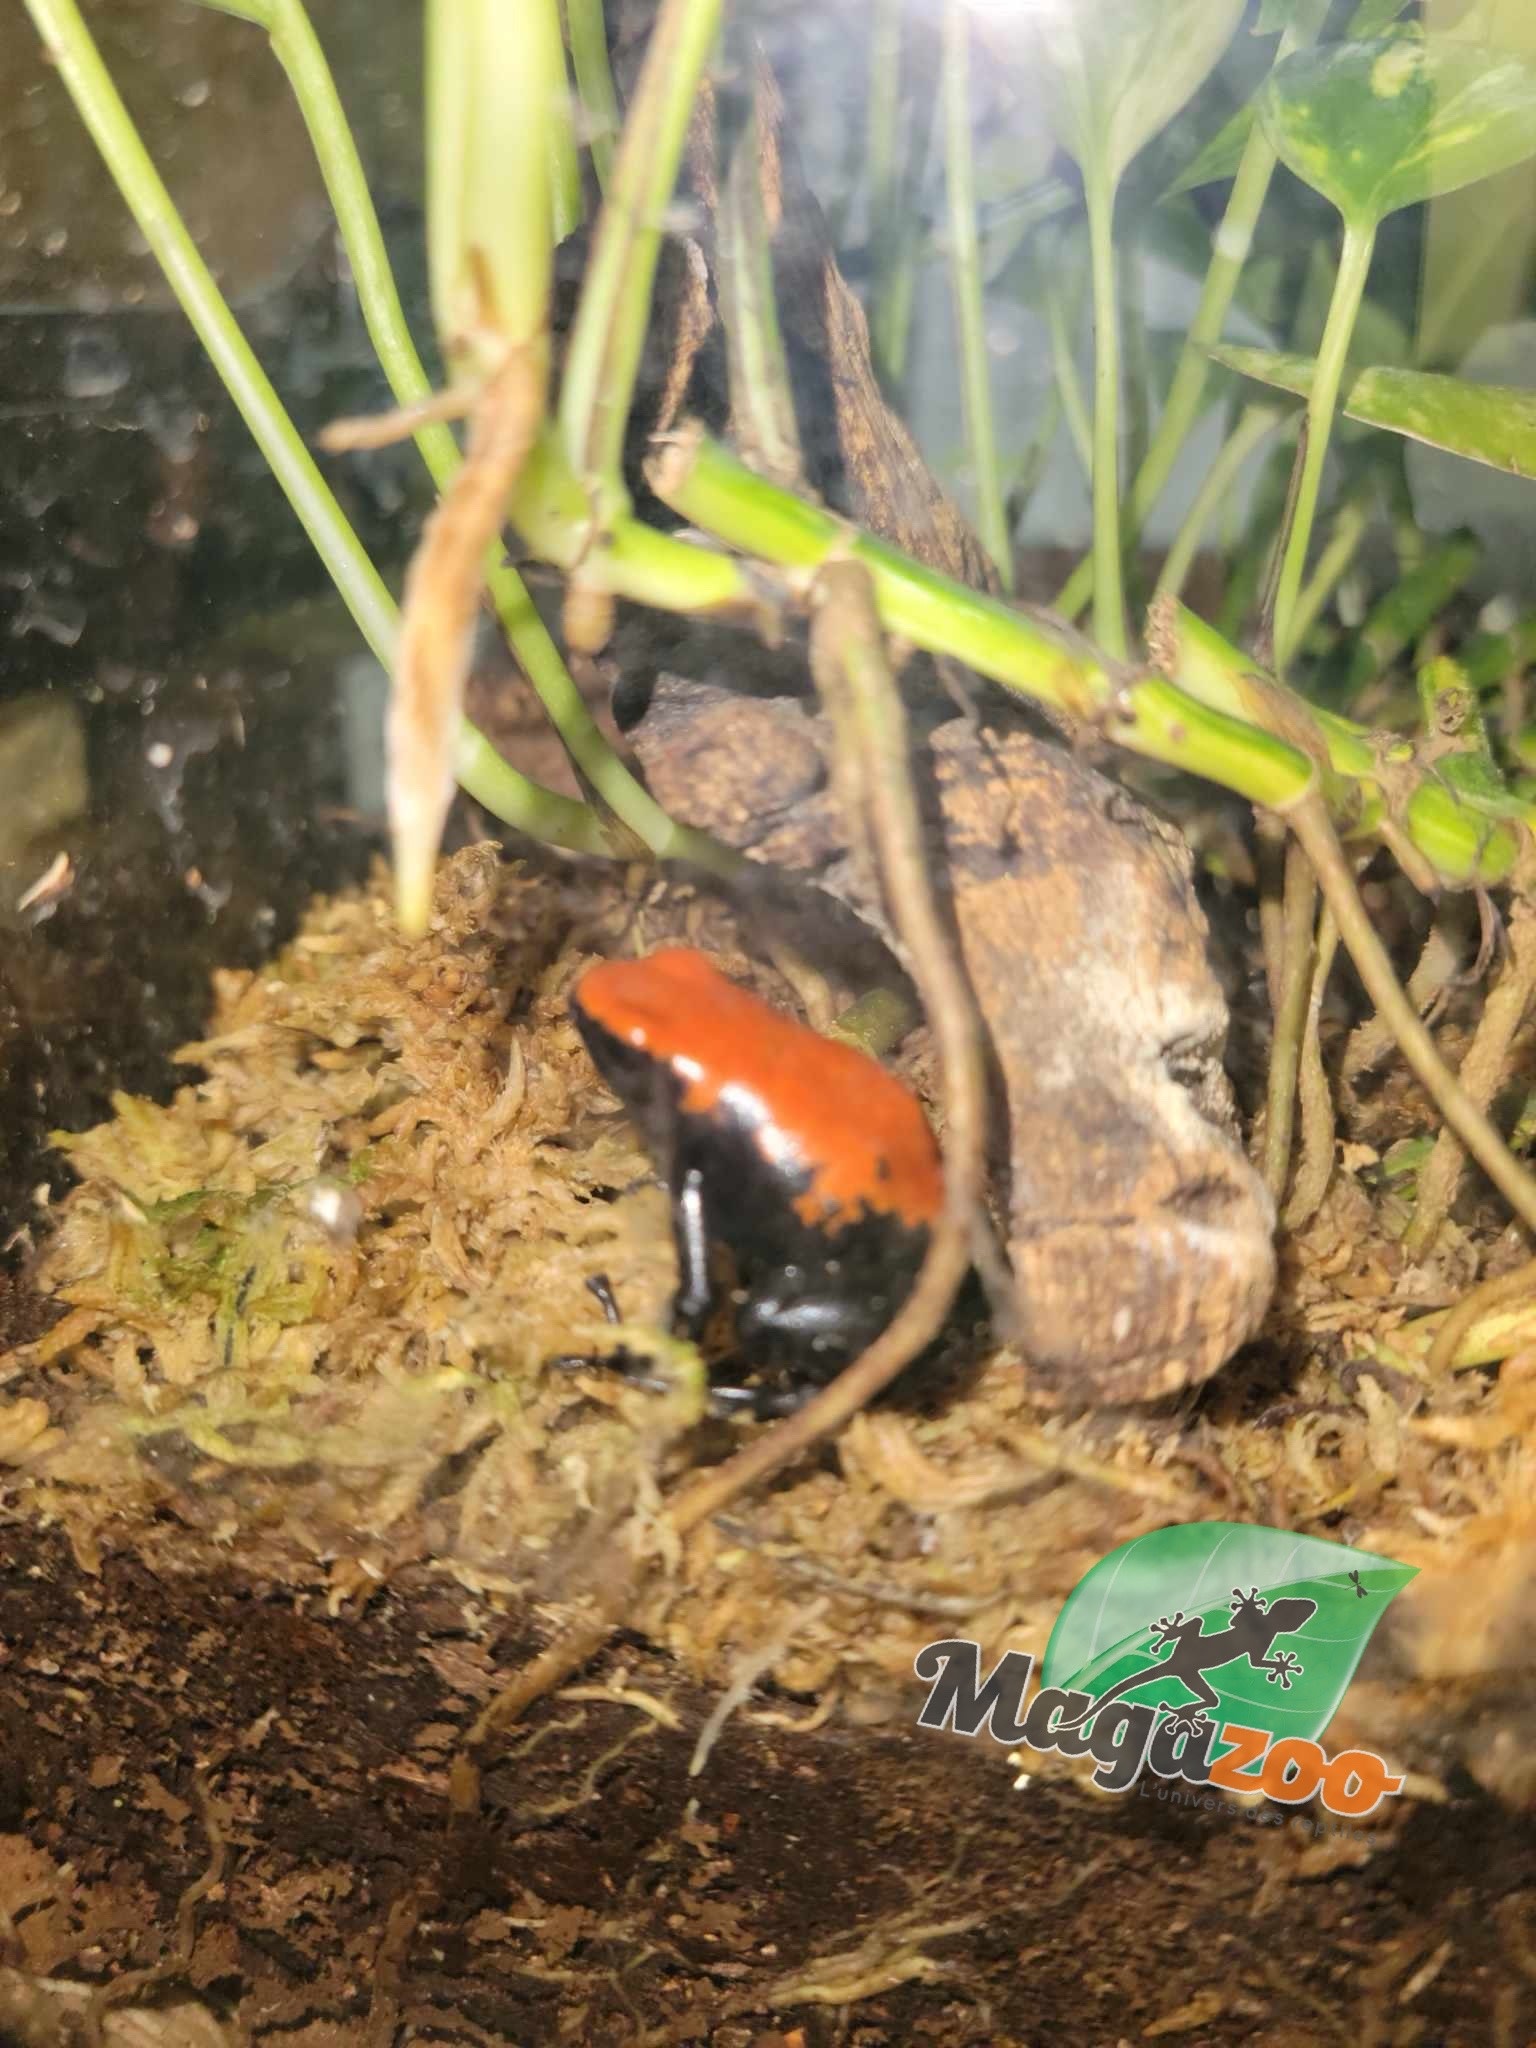 Magazoo Splash-backed poison frog / Adelphobates galactonotus